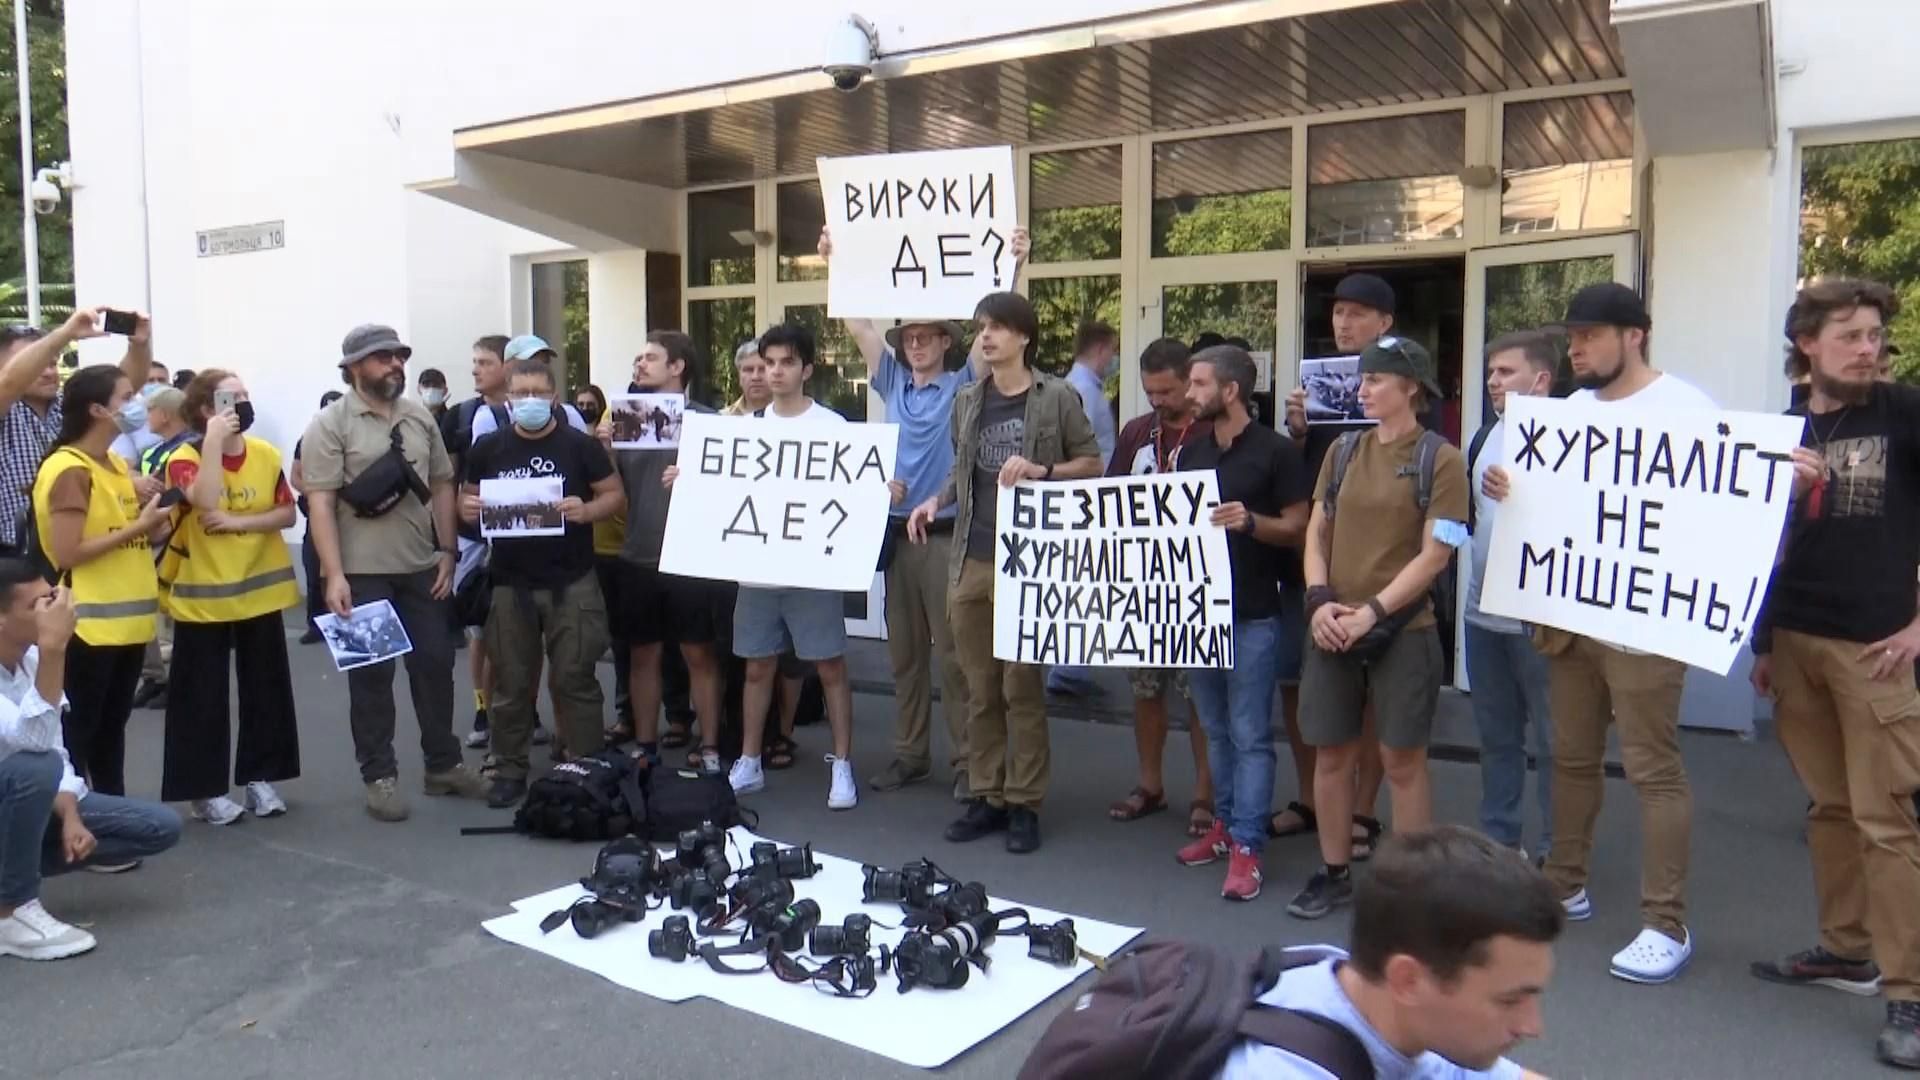 "Журналісти – не мішень": фотокореспонденти вийшли на акцію протесту під МВС - Україна новини - 24 Канал